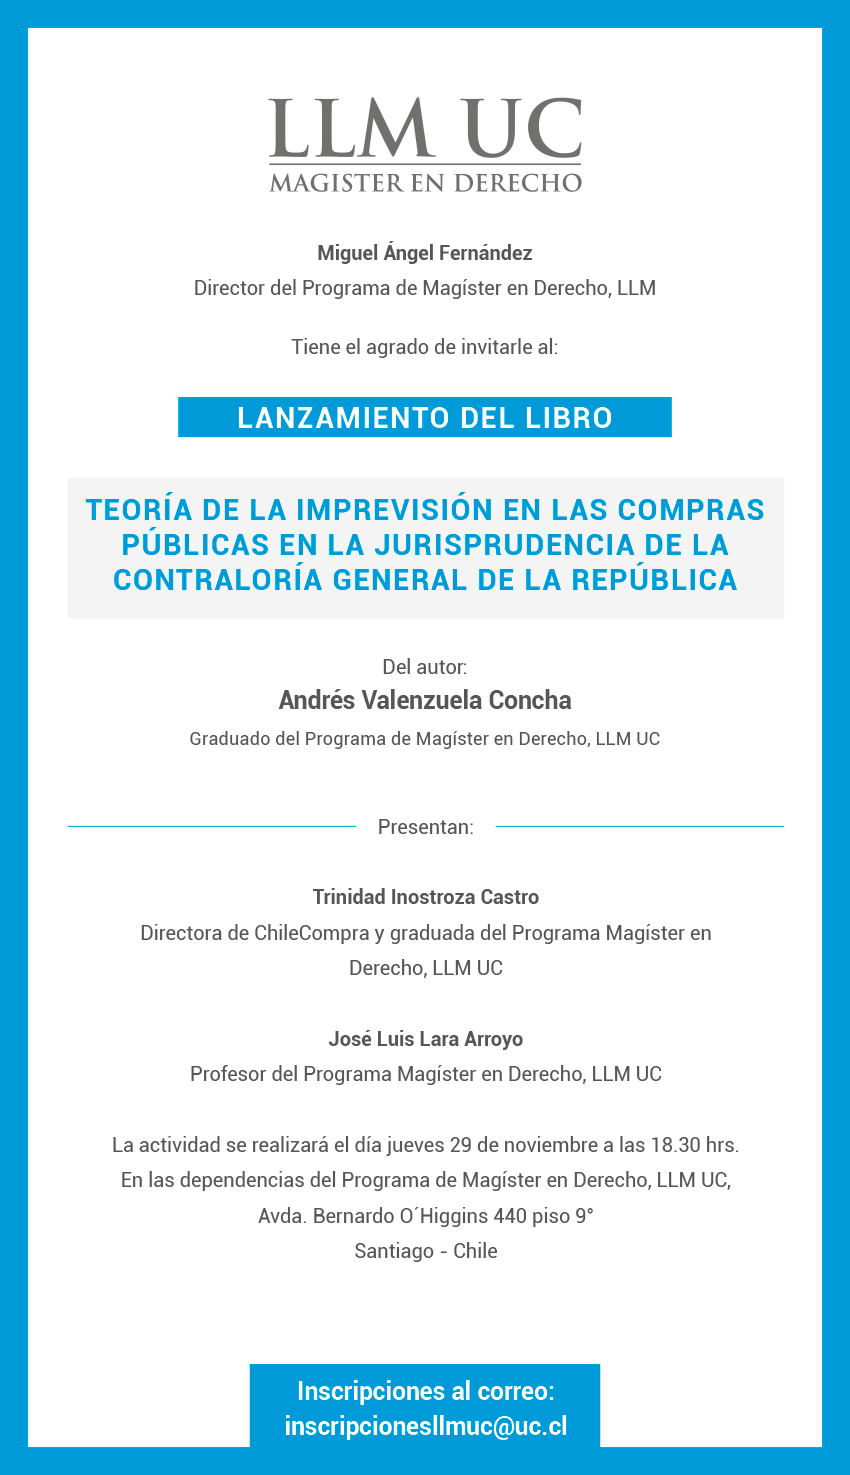 Lanzamiento de libro: Teoría de la imprevisión en las compras públicas en la jurisprudencia de la Contraloría General de la República